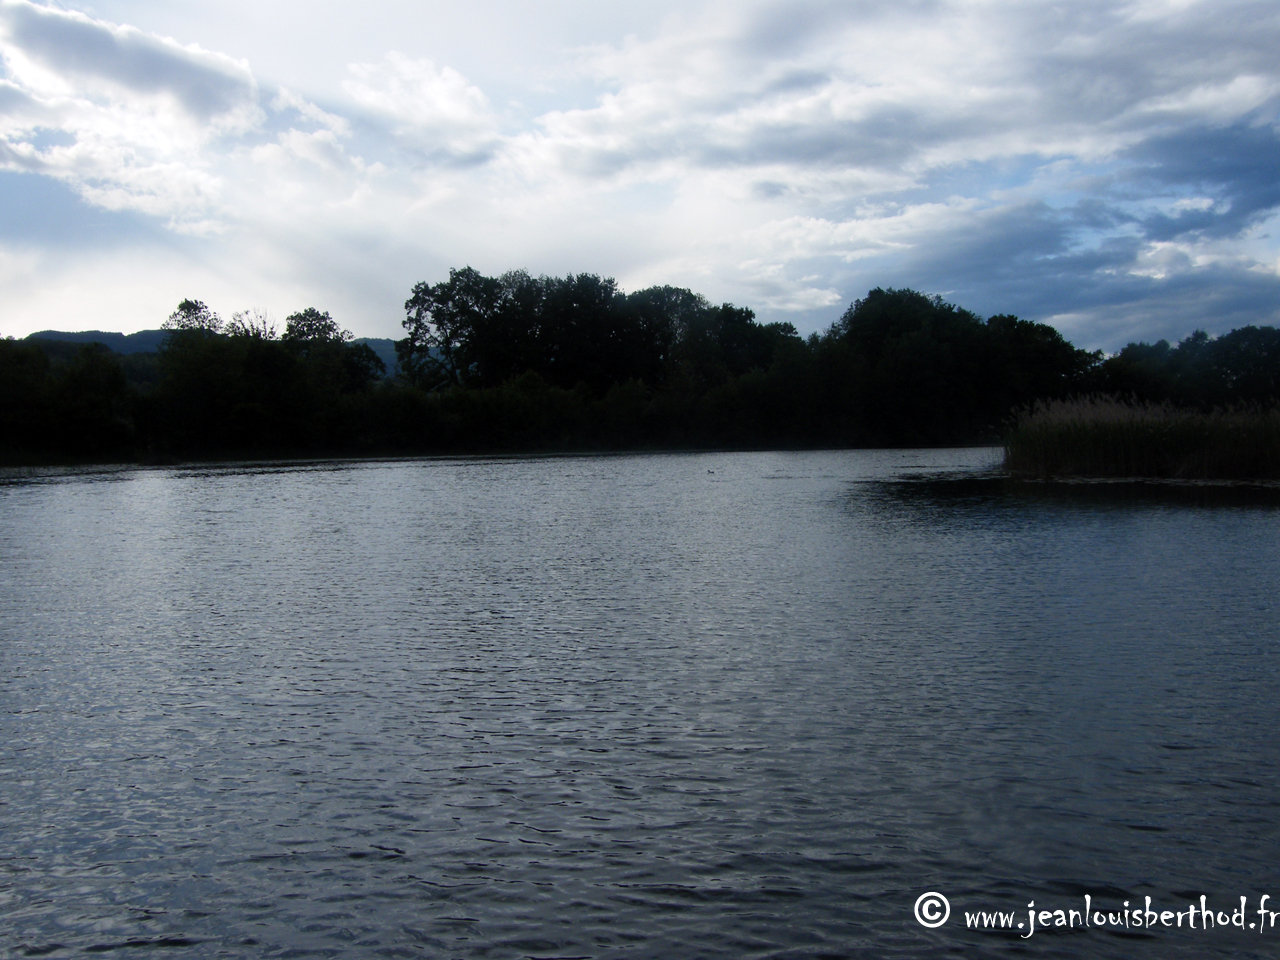 The Pond of Crosagny9